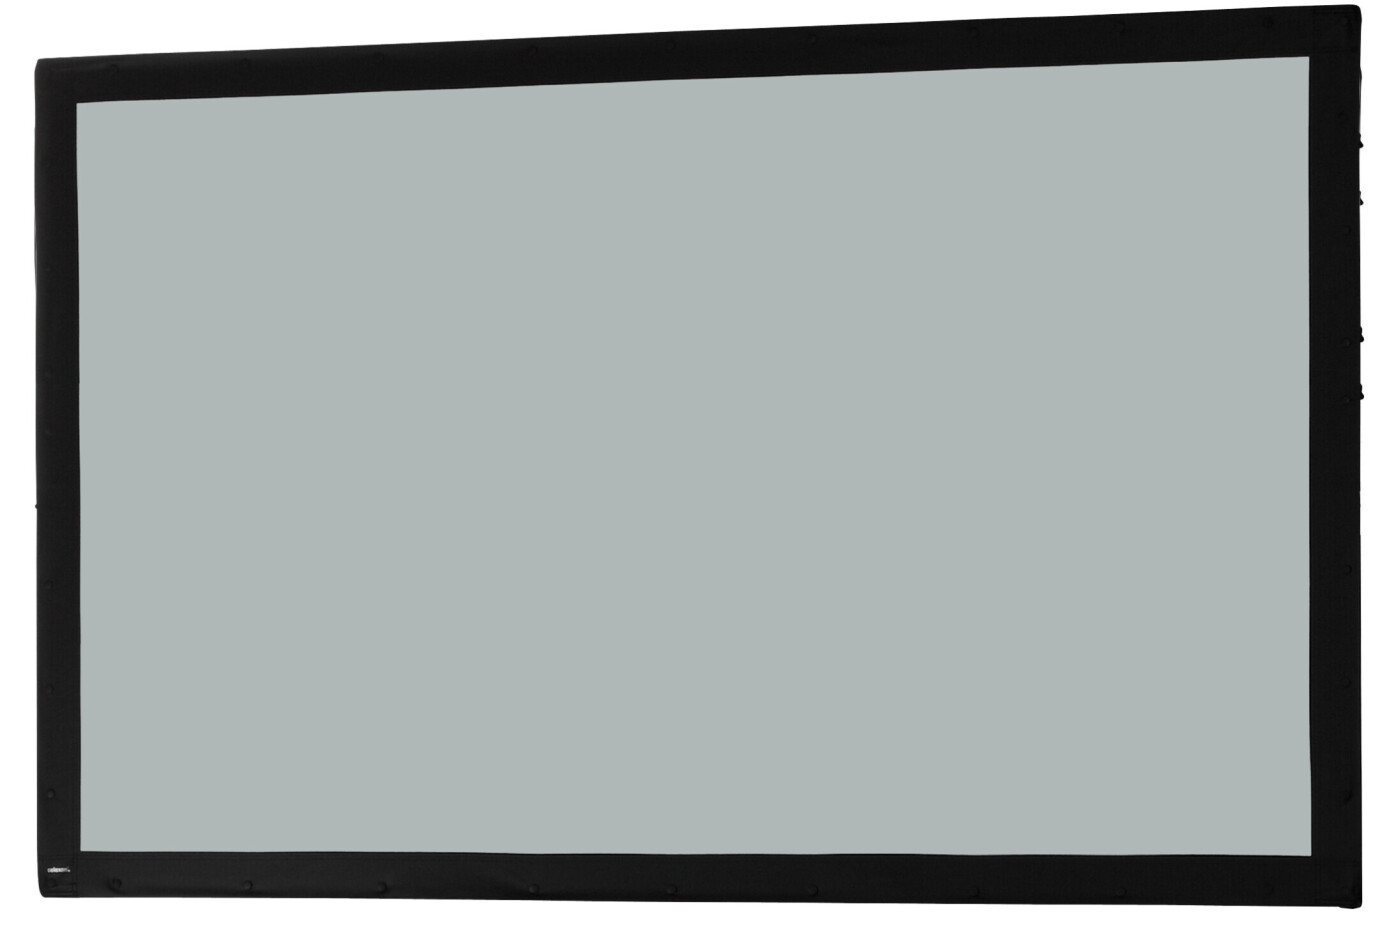 Toile 244 x 152 cm Ecran sur cadre celexon « Mobil Expert », projection arrière